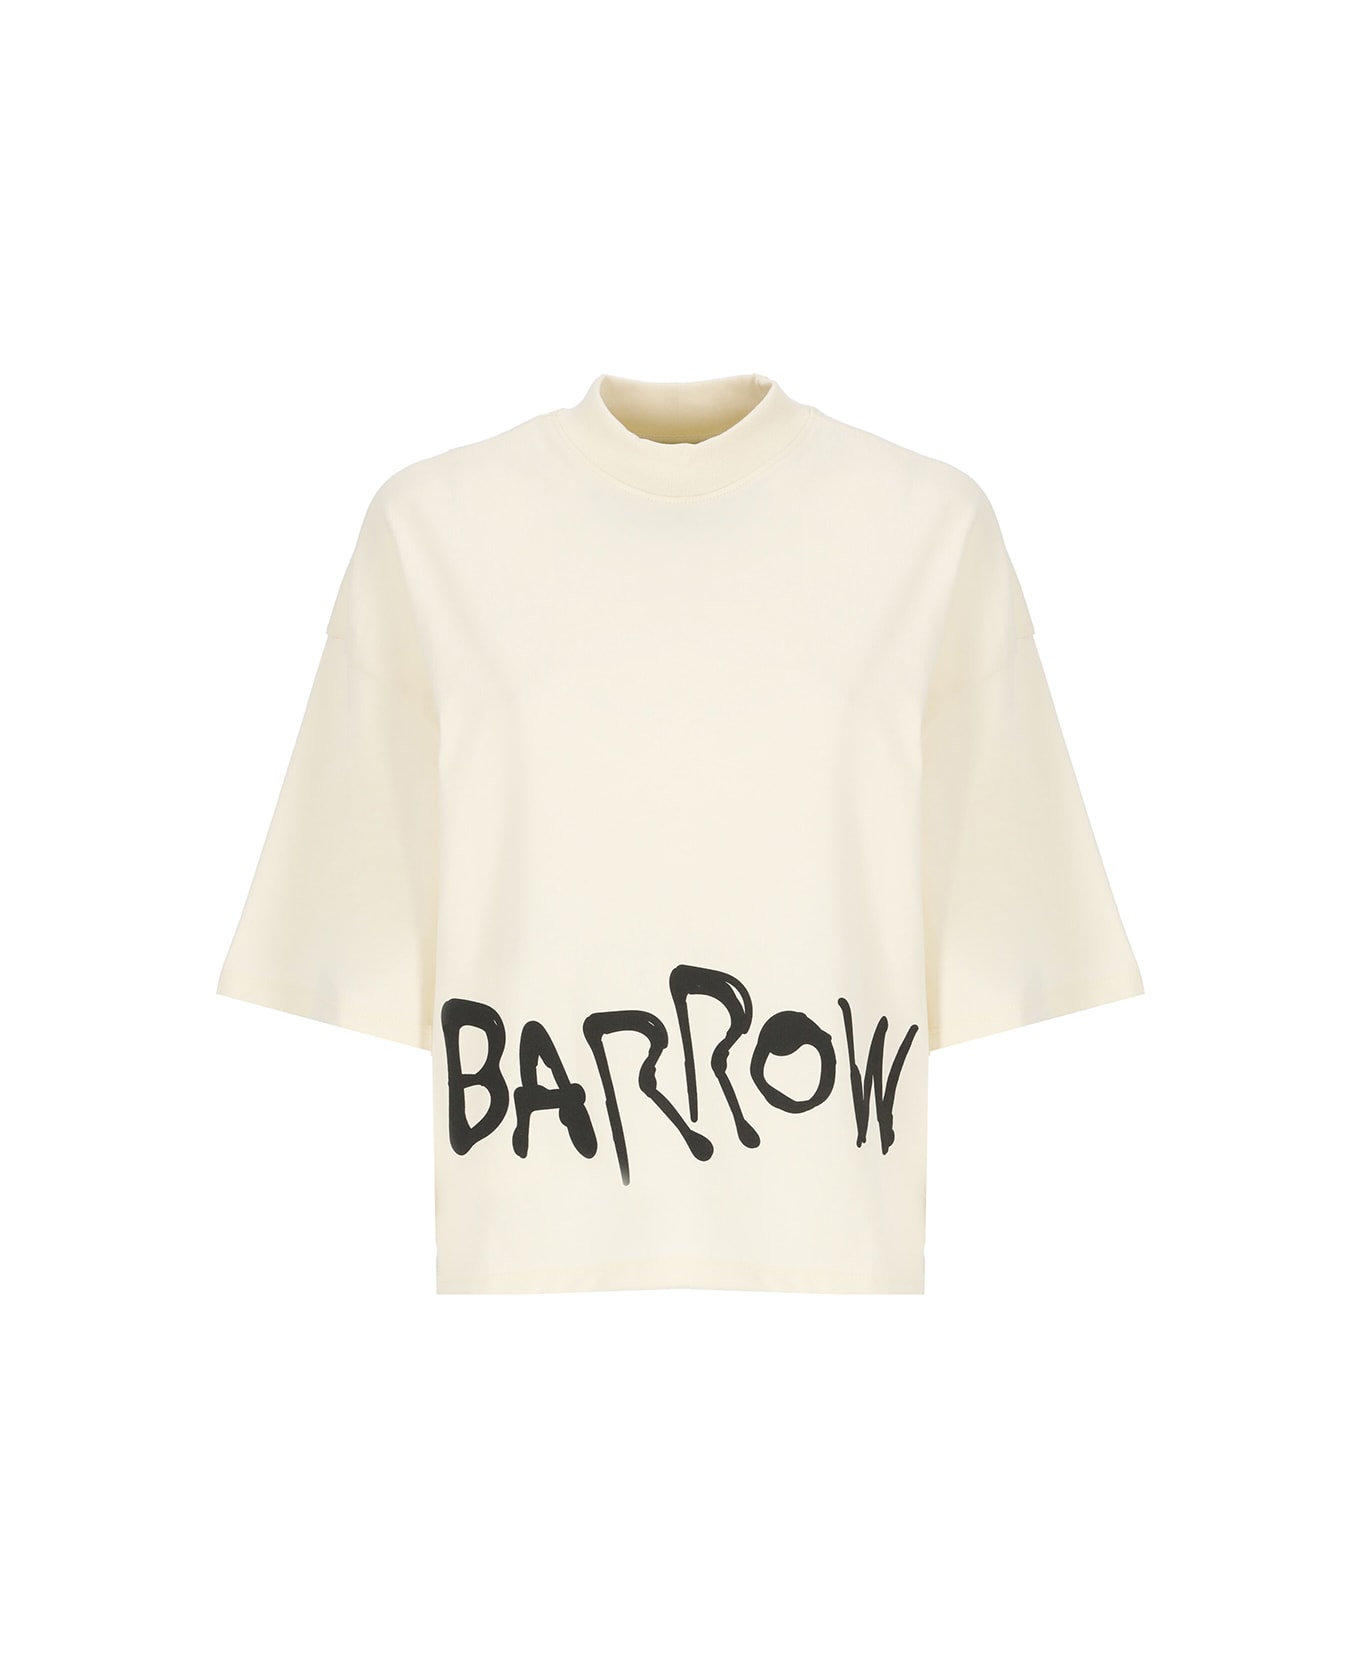 Barrow Logoed T-shirt - Butter